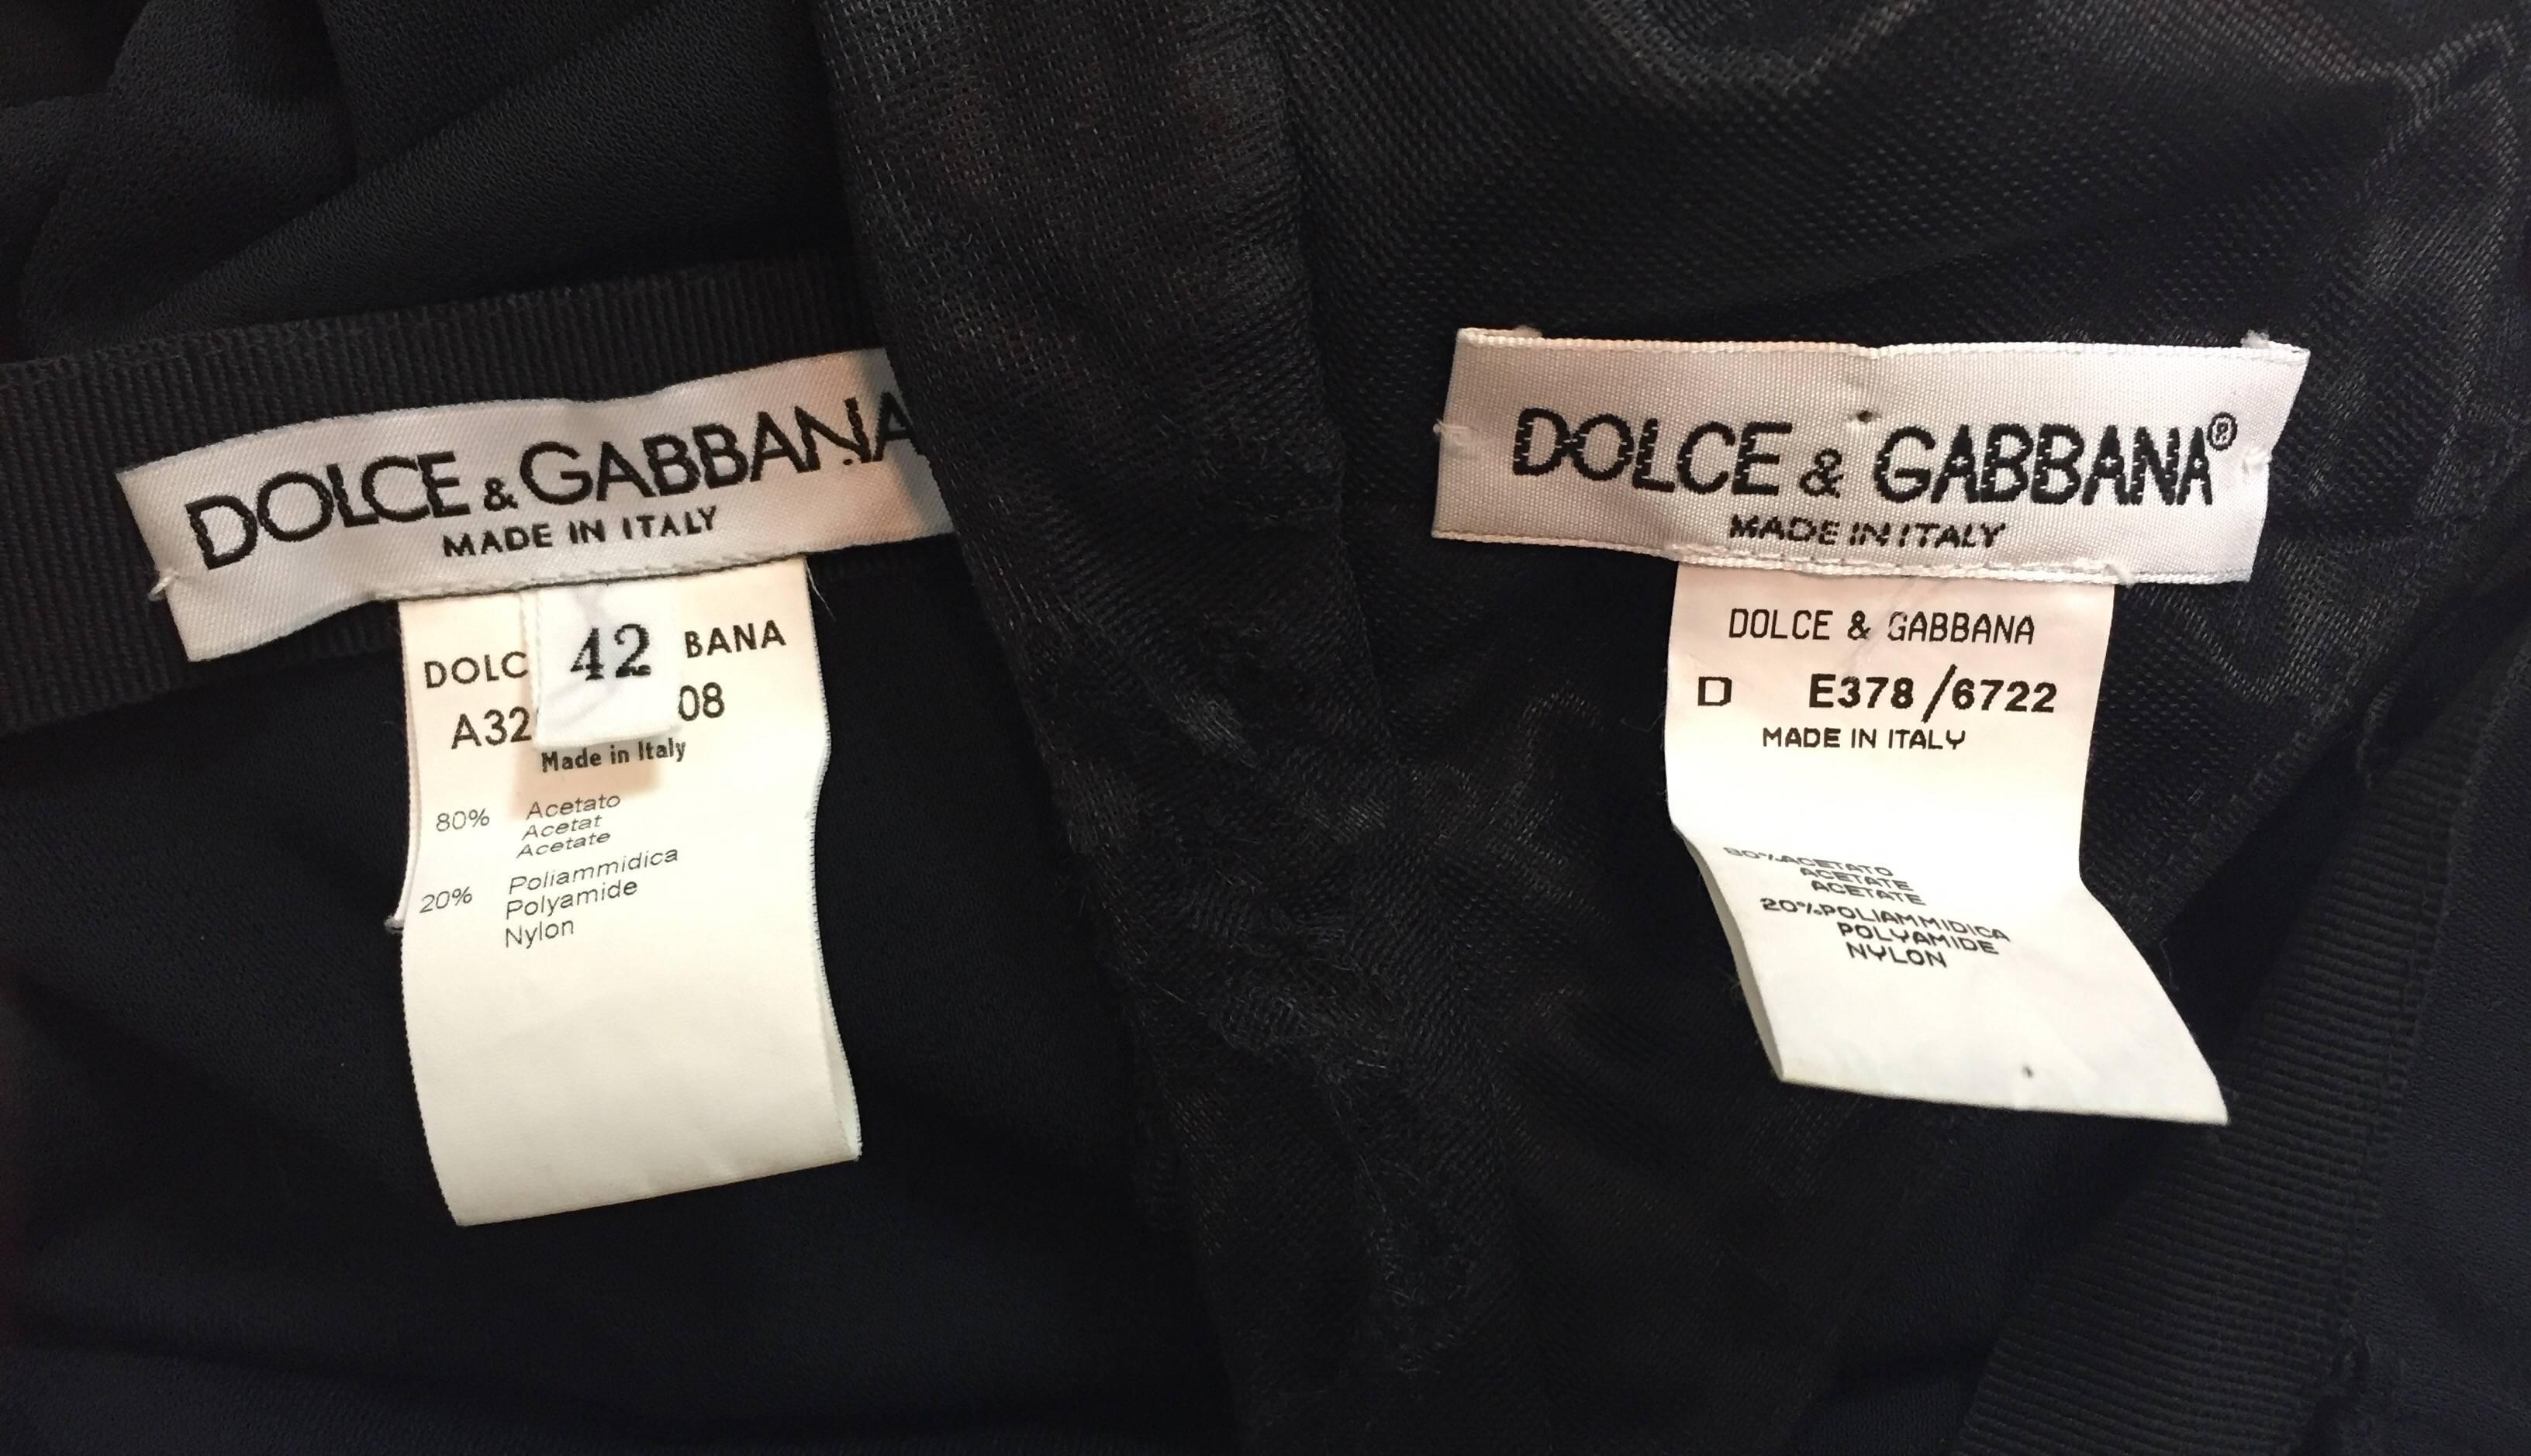 Black S/S 1997 Dolce & Gabbana Sheer High Slit Skirt And Bra Top Ensemble 